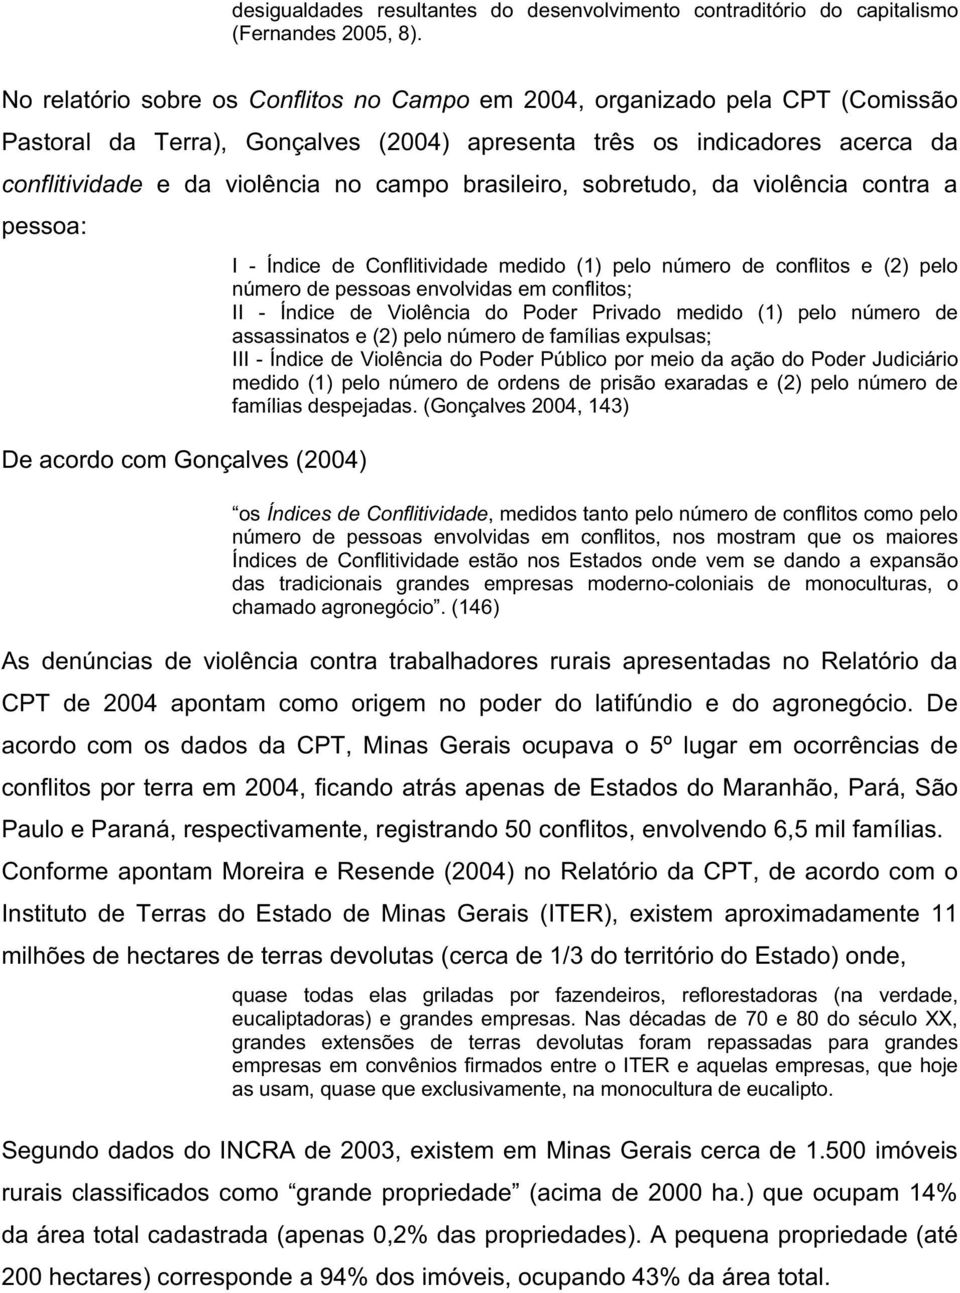 brasileiro, sobretudo, da violência contra a pessoa: De acordo com Gonçalves (2004) I - Índice de Conflitividade medido (1) pelo número de conflitos e (2) pelo número de pessoas envolvidas em